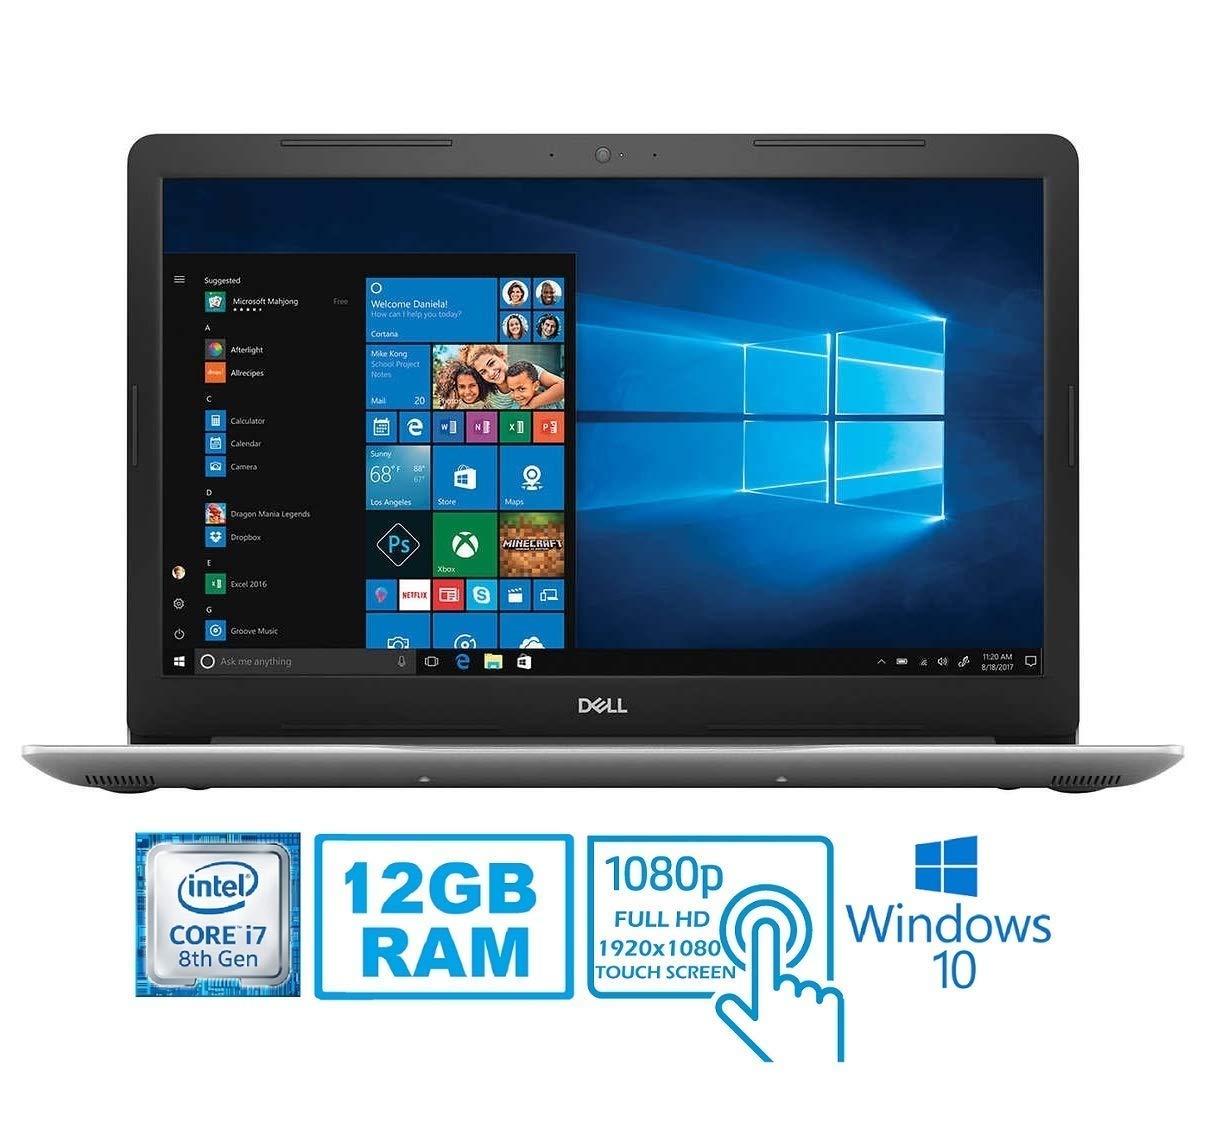 Dell 2019 Inspiron 15 5000 5570 Intel Core i7-8550U 12 GB DDR4 1TB HDD 15.6